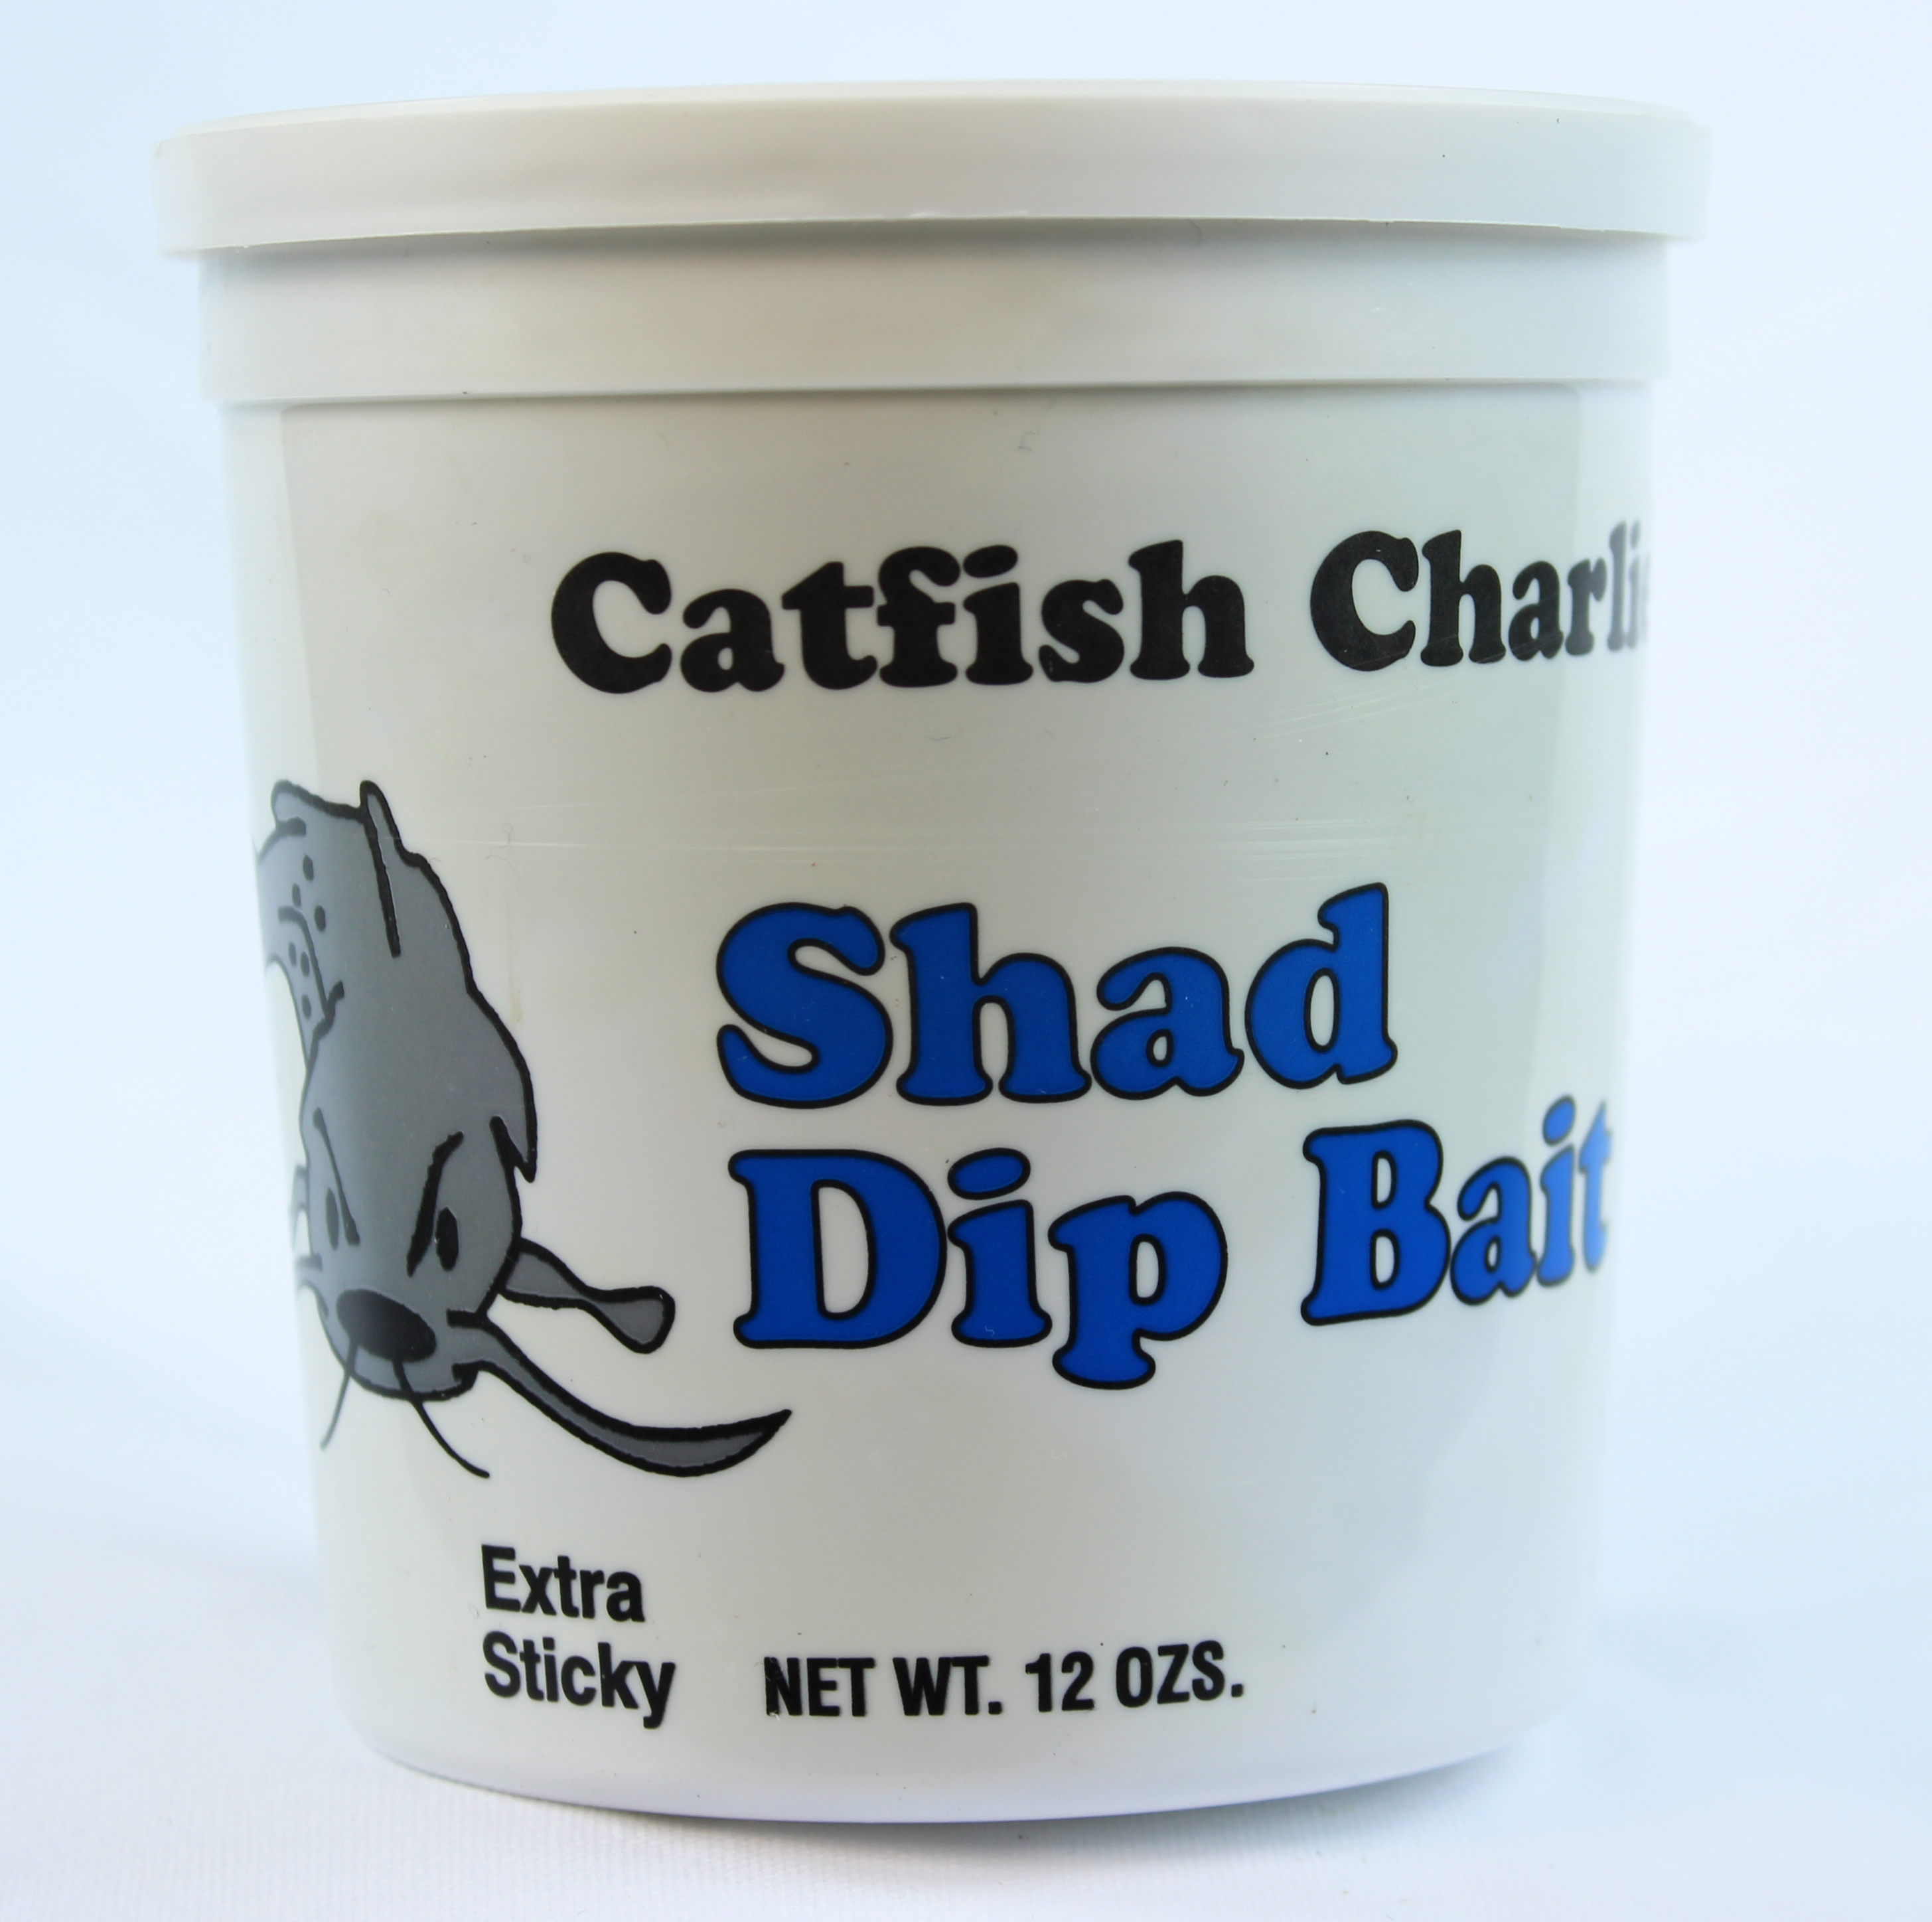 http://catsandcarp.com/wp-content/uploads/2013/11/Catfish-Charlie-Dip-Bait-Shad.jpg